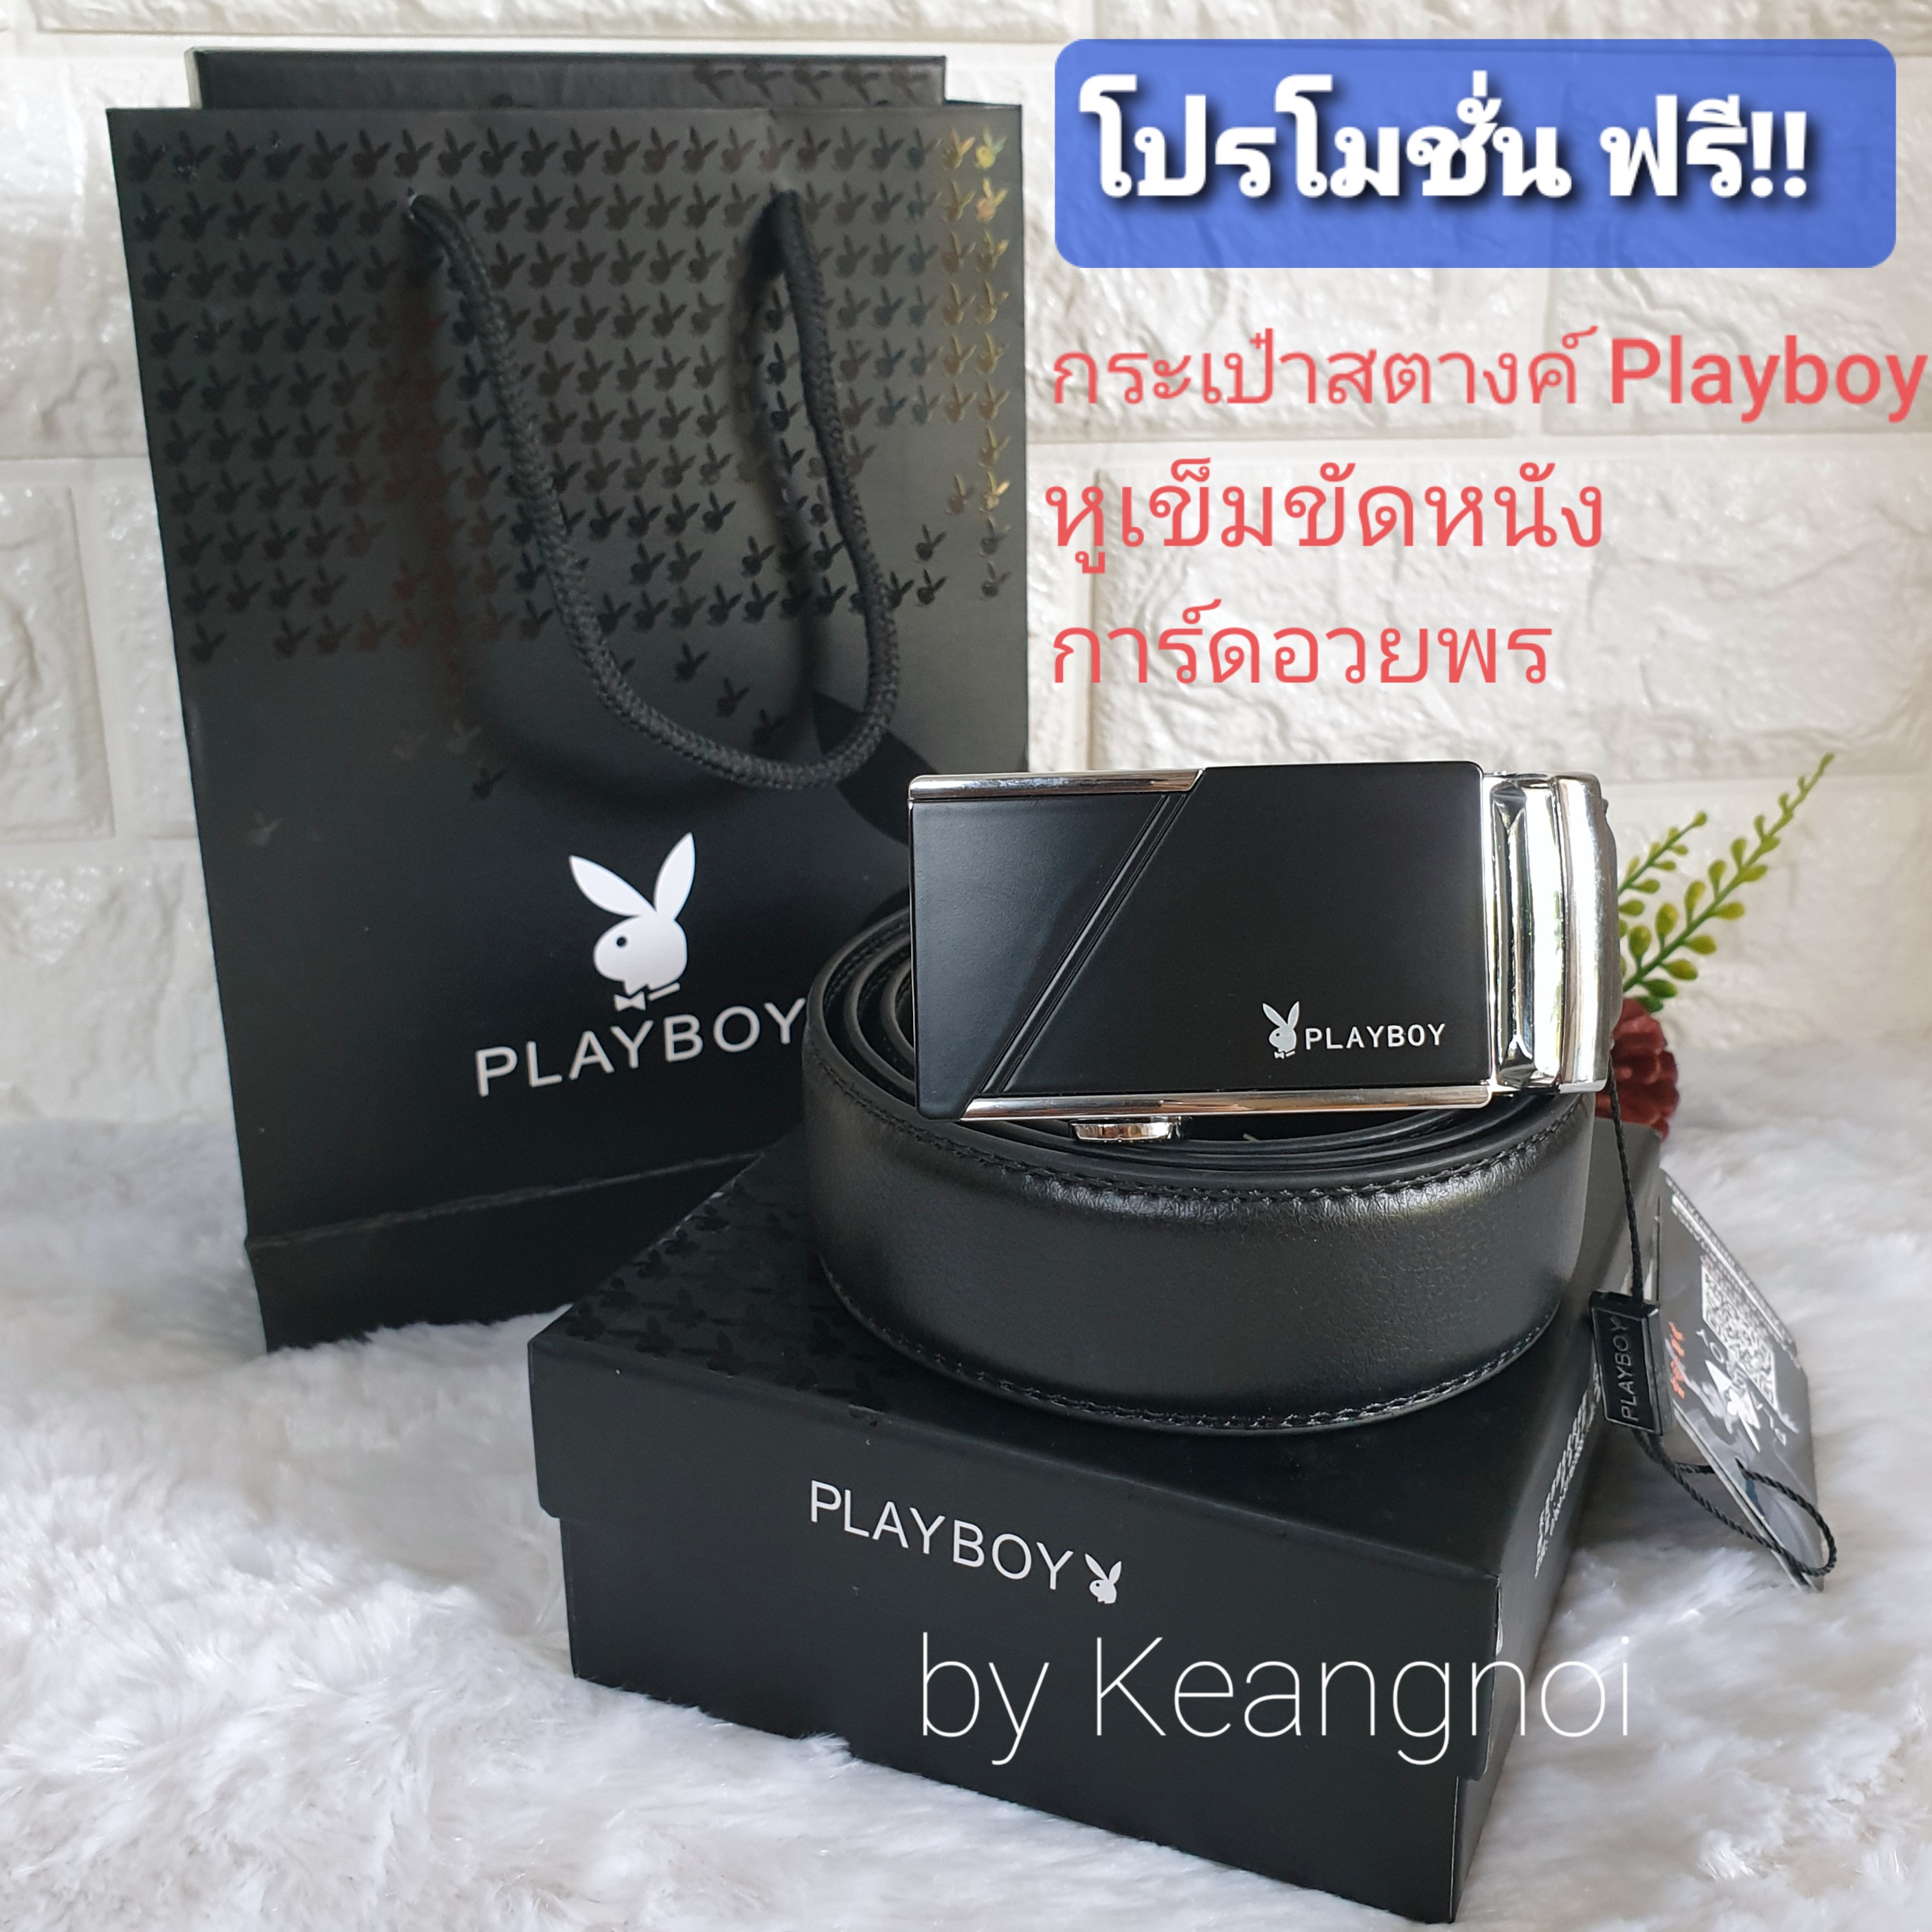 ชุดของขวัญ สำหรับสุภาพบุรุษ เข็มขัดหนังแท้ Playboy รวม 6 แบบ   พร้อมกล่อง + ถุงกระดาษ ฟรี!!หูเข็มขัดหนัง และ การ์ดอวยพร